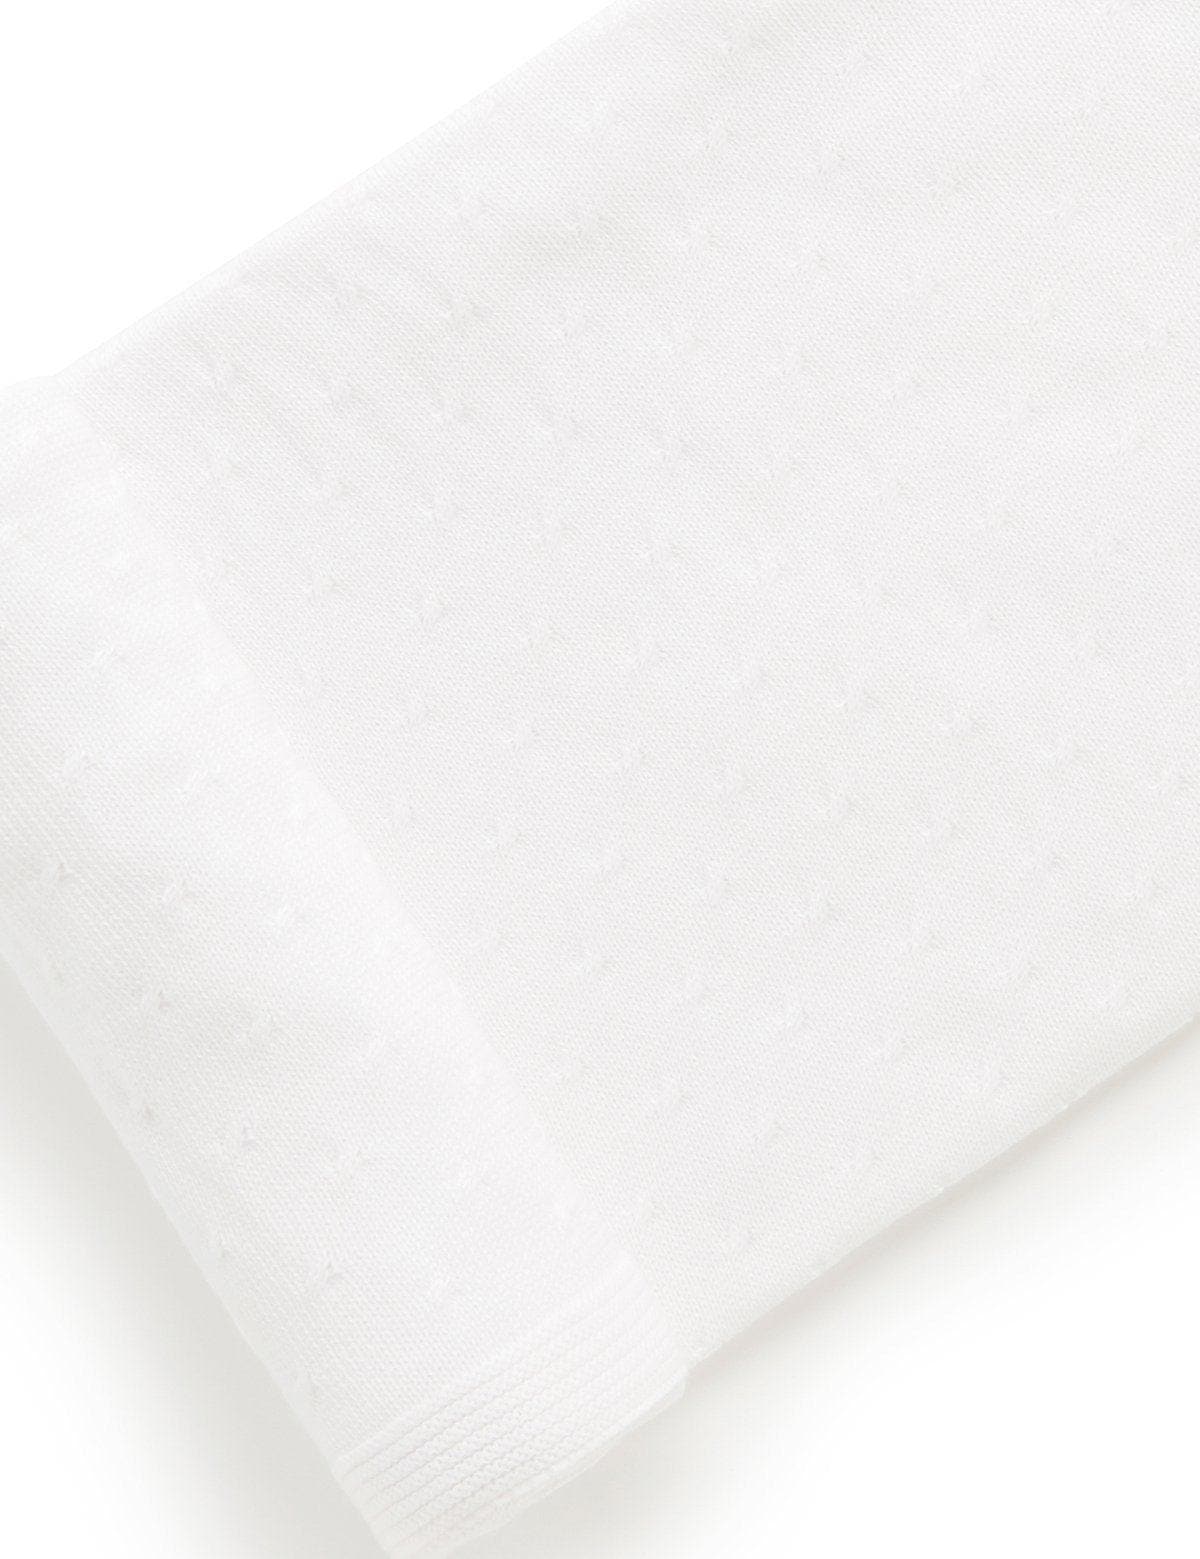 Purebaby Essentials Blanket in White